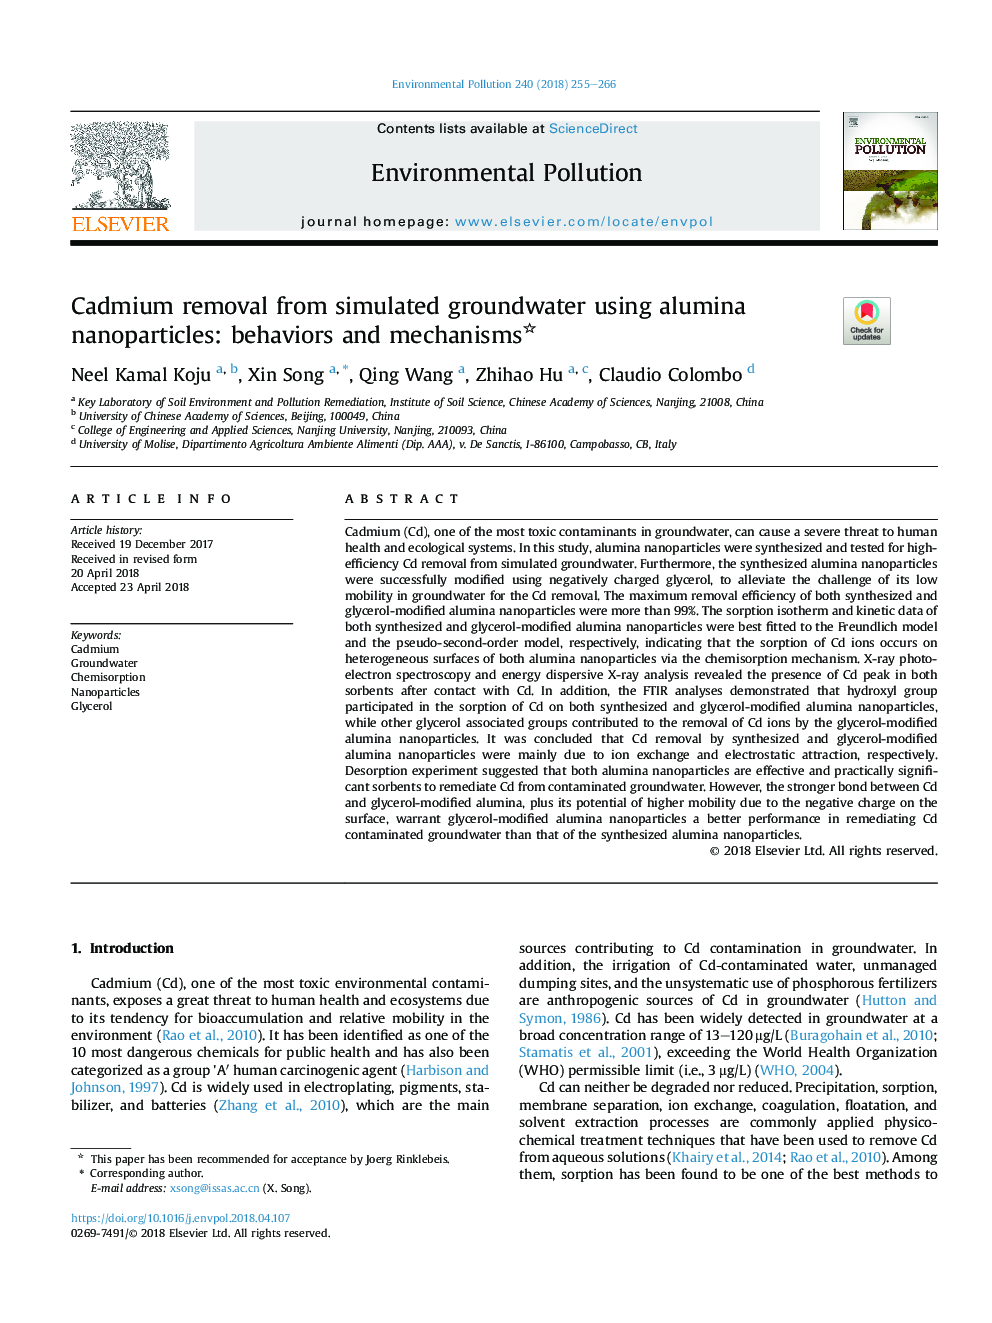 حذف کادمیوم از آبهای زیرزمینی شبیه سازی شده با استفاده از نانوذرات آلومینا: رفتارها و مکانیزم 